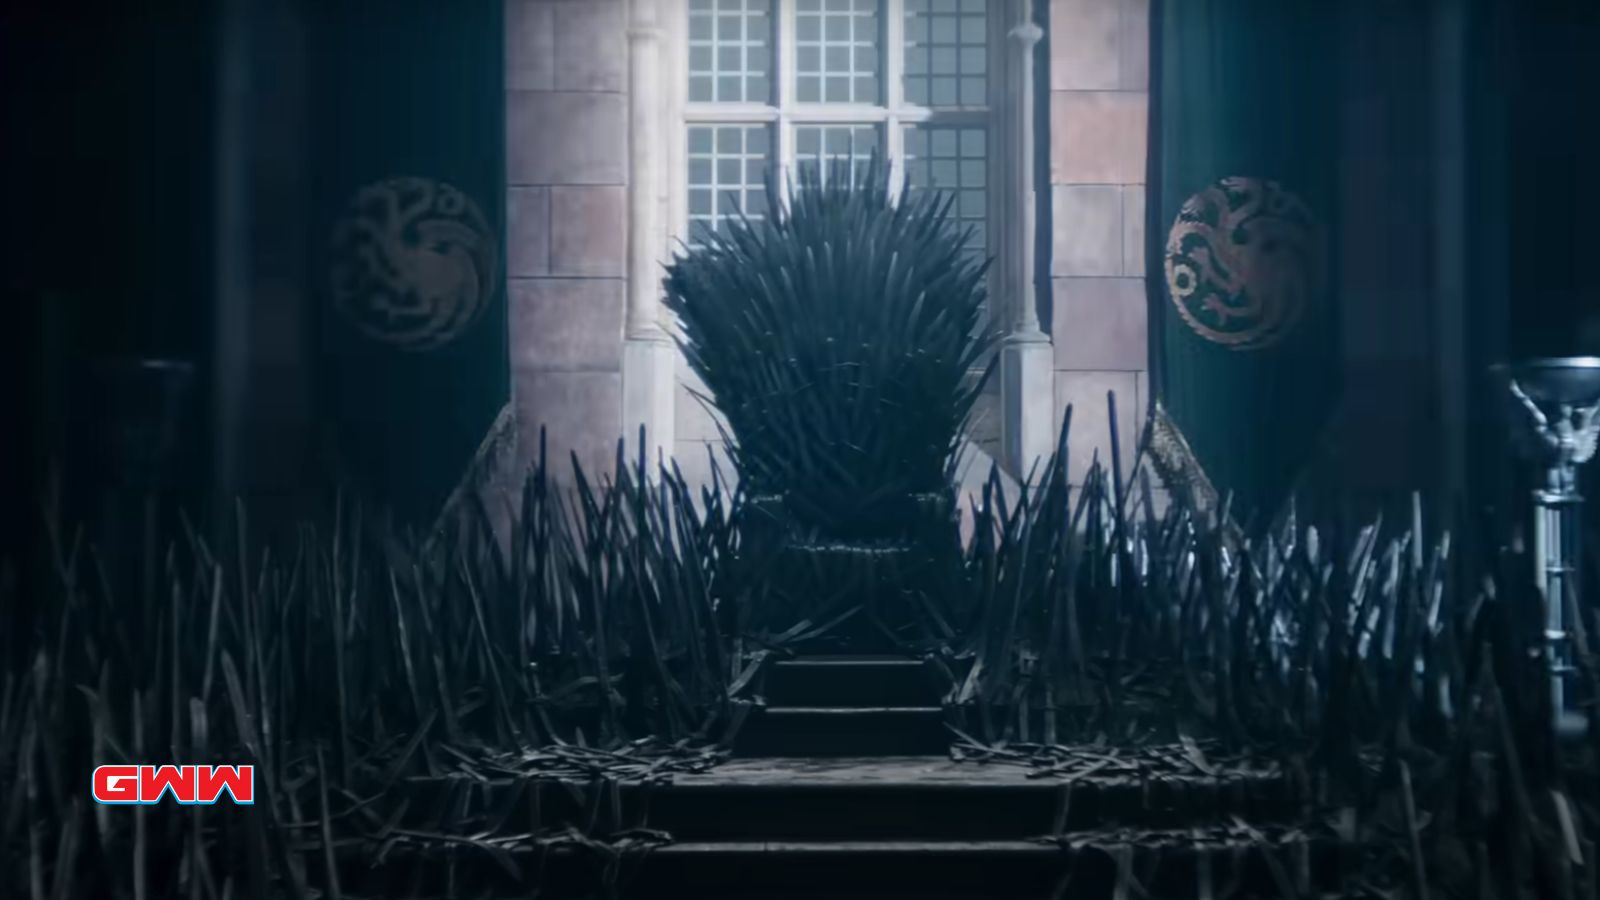 The Iron Throne, House of the Dragon Season 2